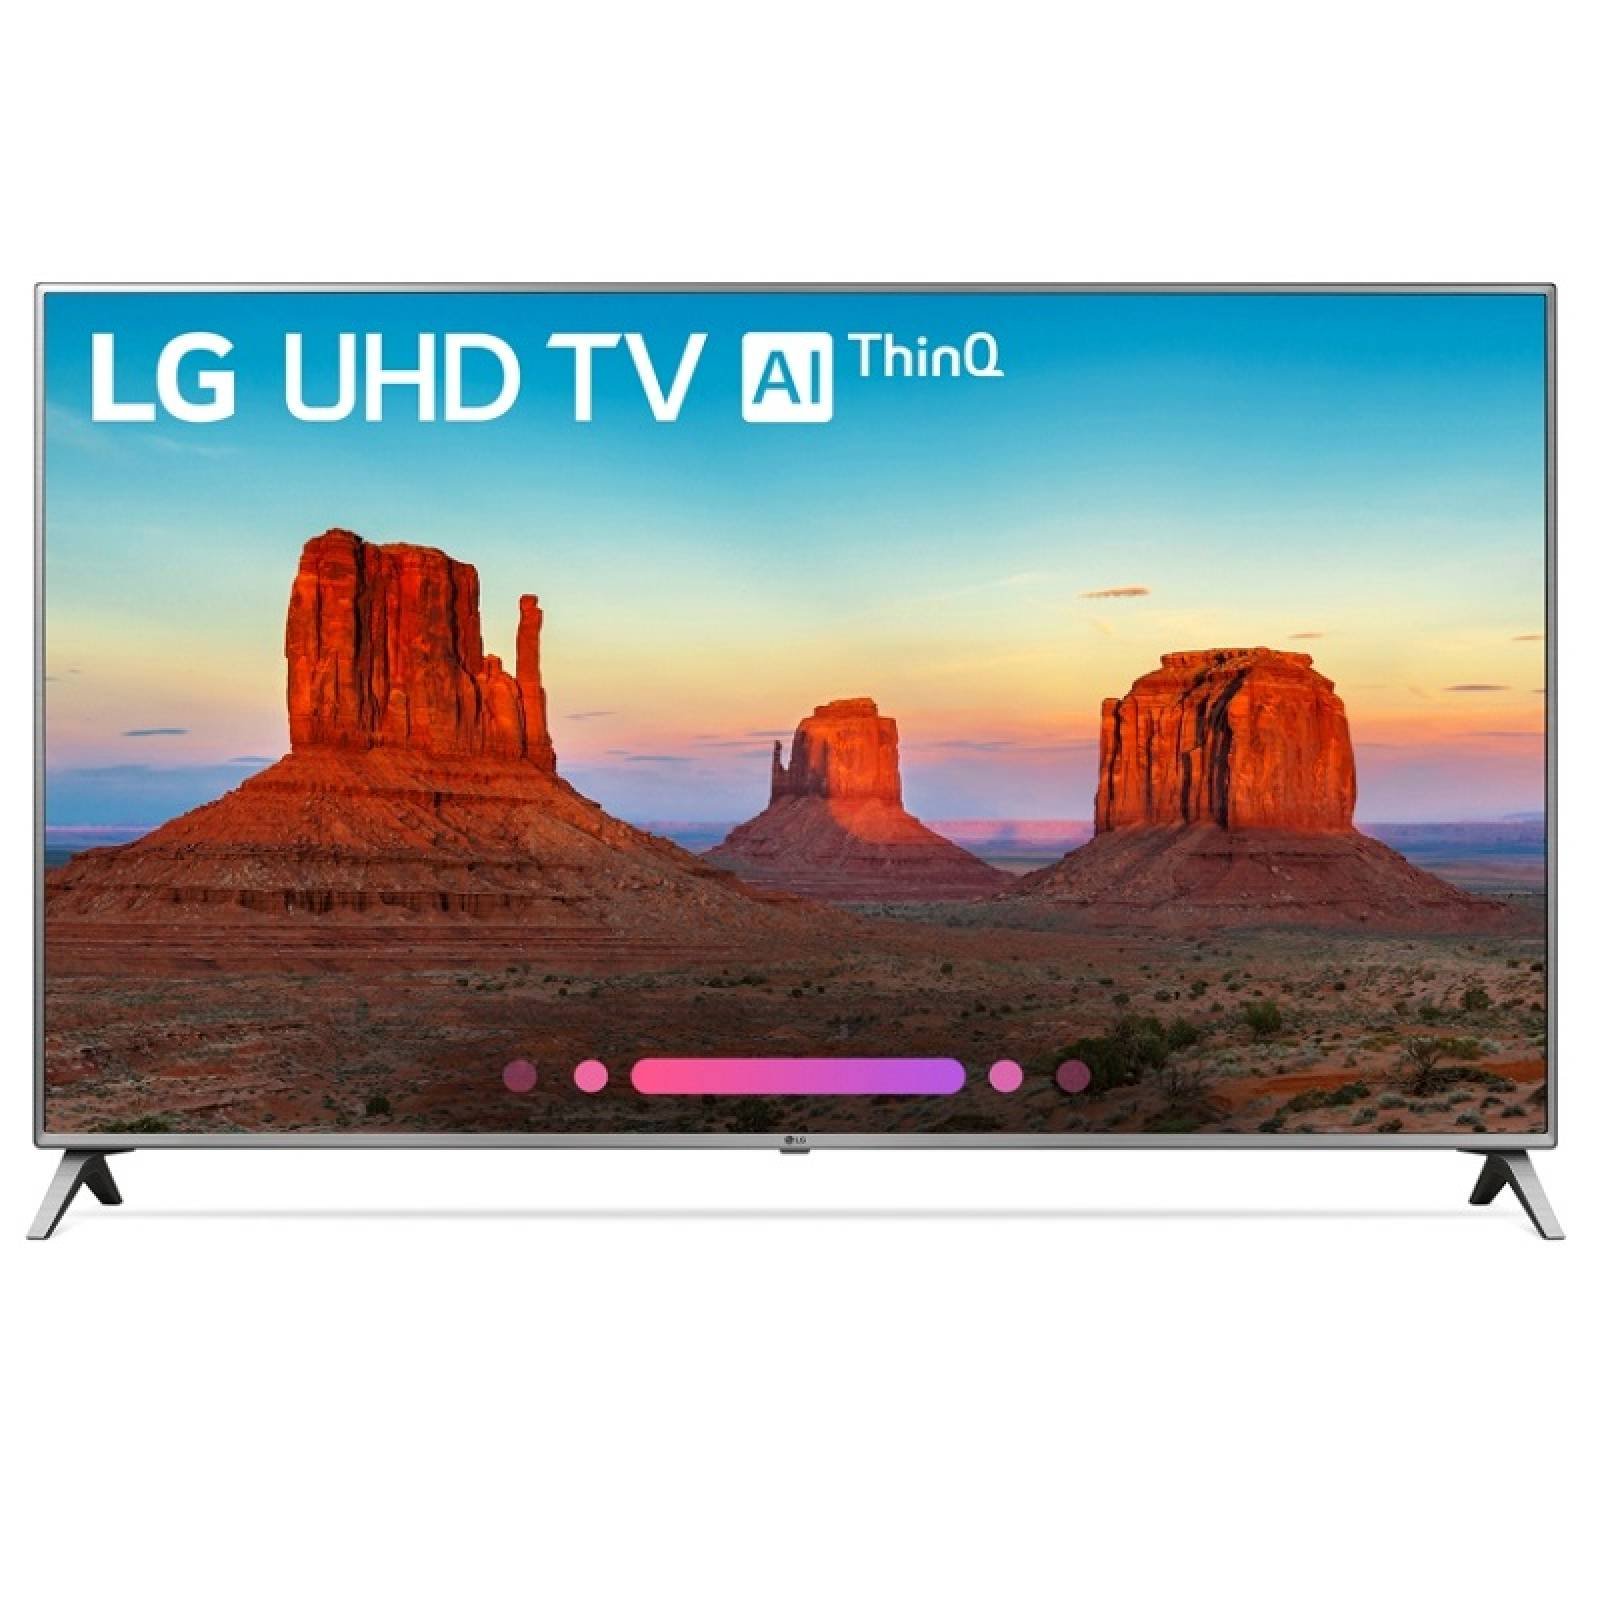 Smart TV 65 LG 4K UHD HDR USB HDMI 65UK6500AUA - Reacondicionado